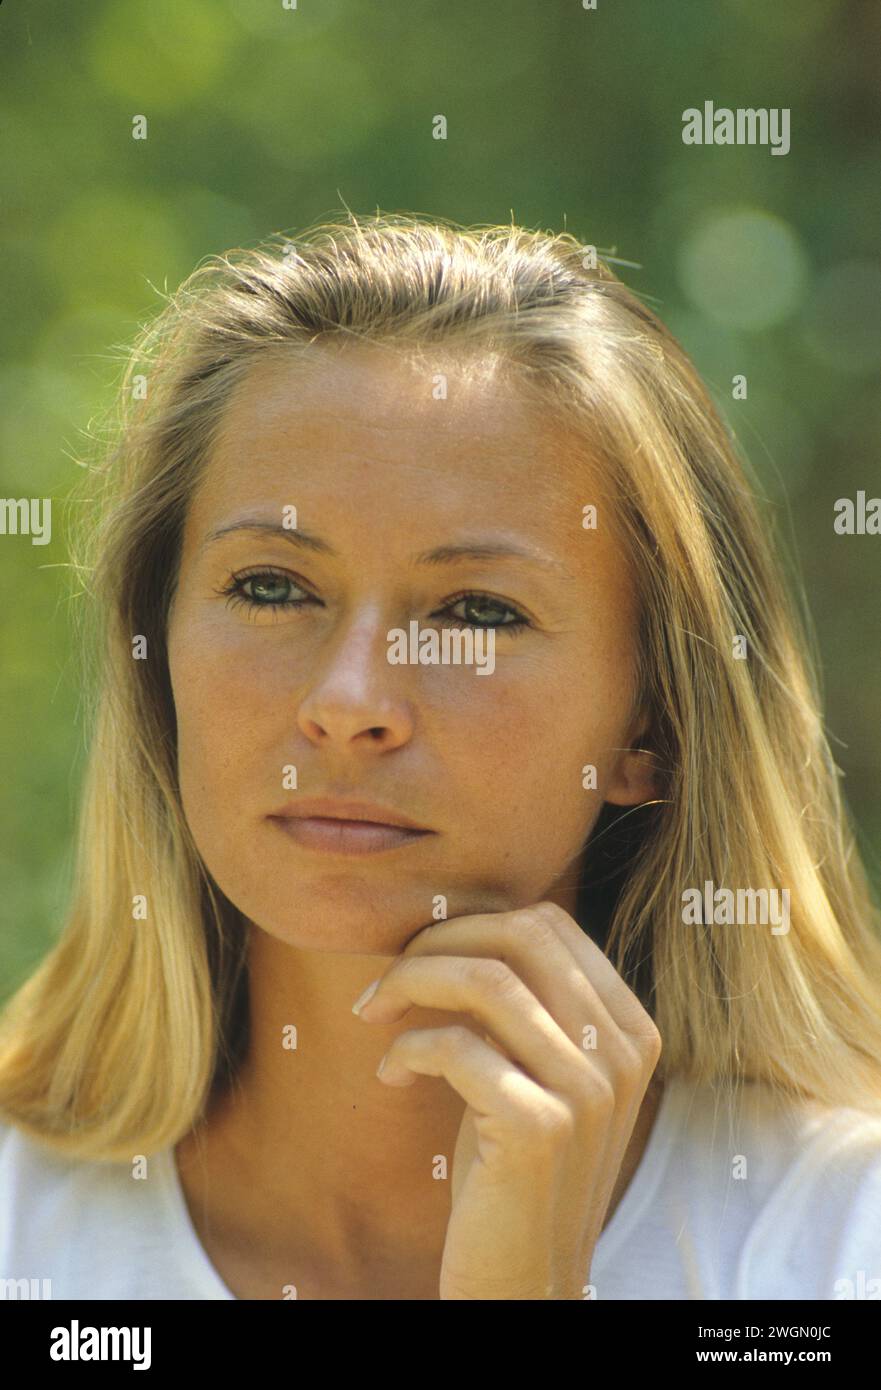 Hübsches blondes Haar junge Frau glückliches Denken natürliches gut aussehendes grünes Laub Hintergrund aussehende Frontkamera Stockfoto